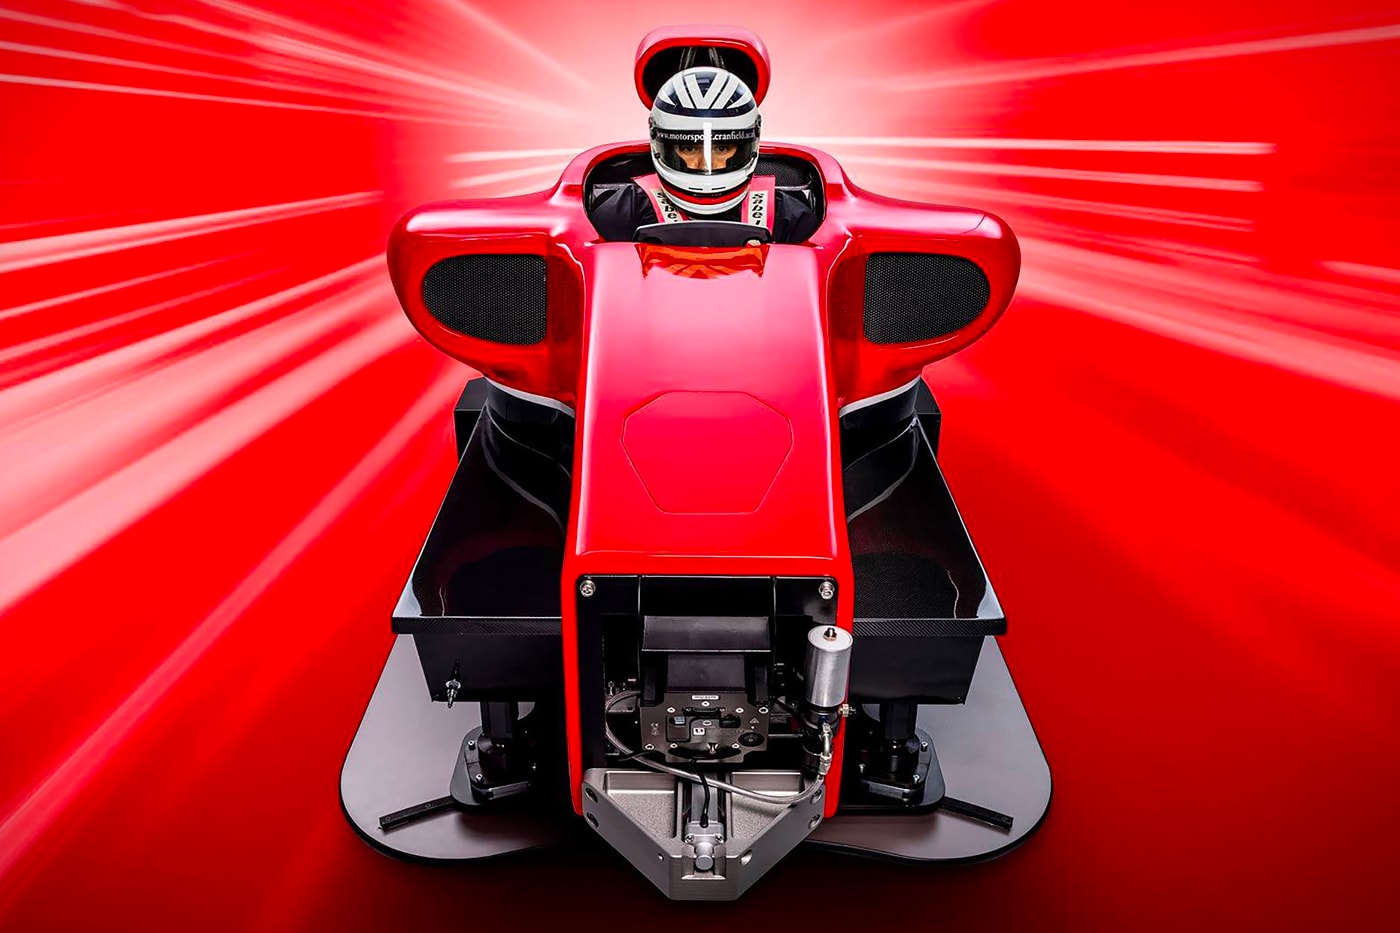 Cranfield Full Motion + G-Force Formula 1 Simulator информация гонки технологии игры роскошные гонки домашняя Британия кабина Ferrari McLaren 